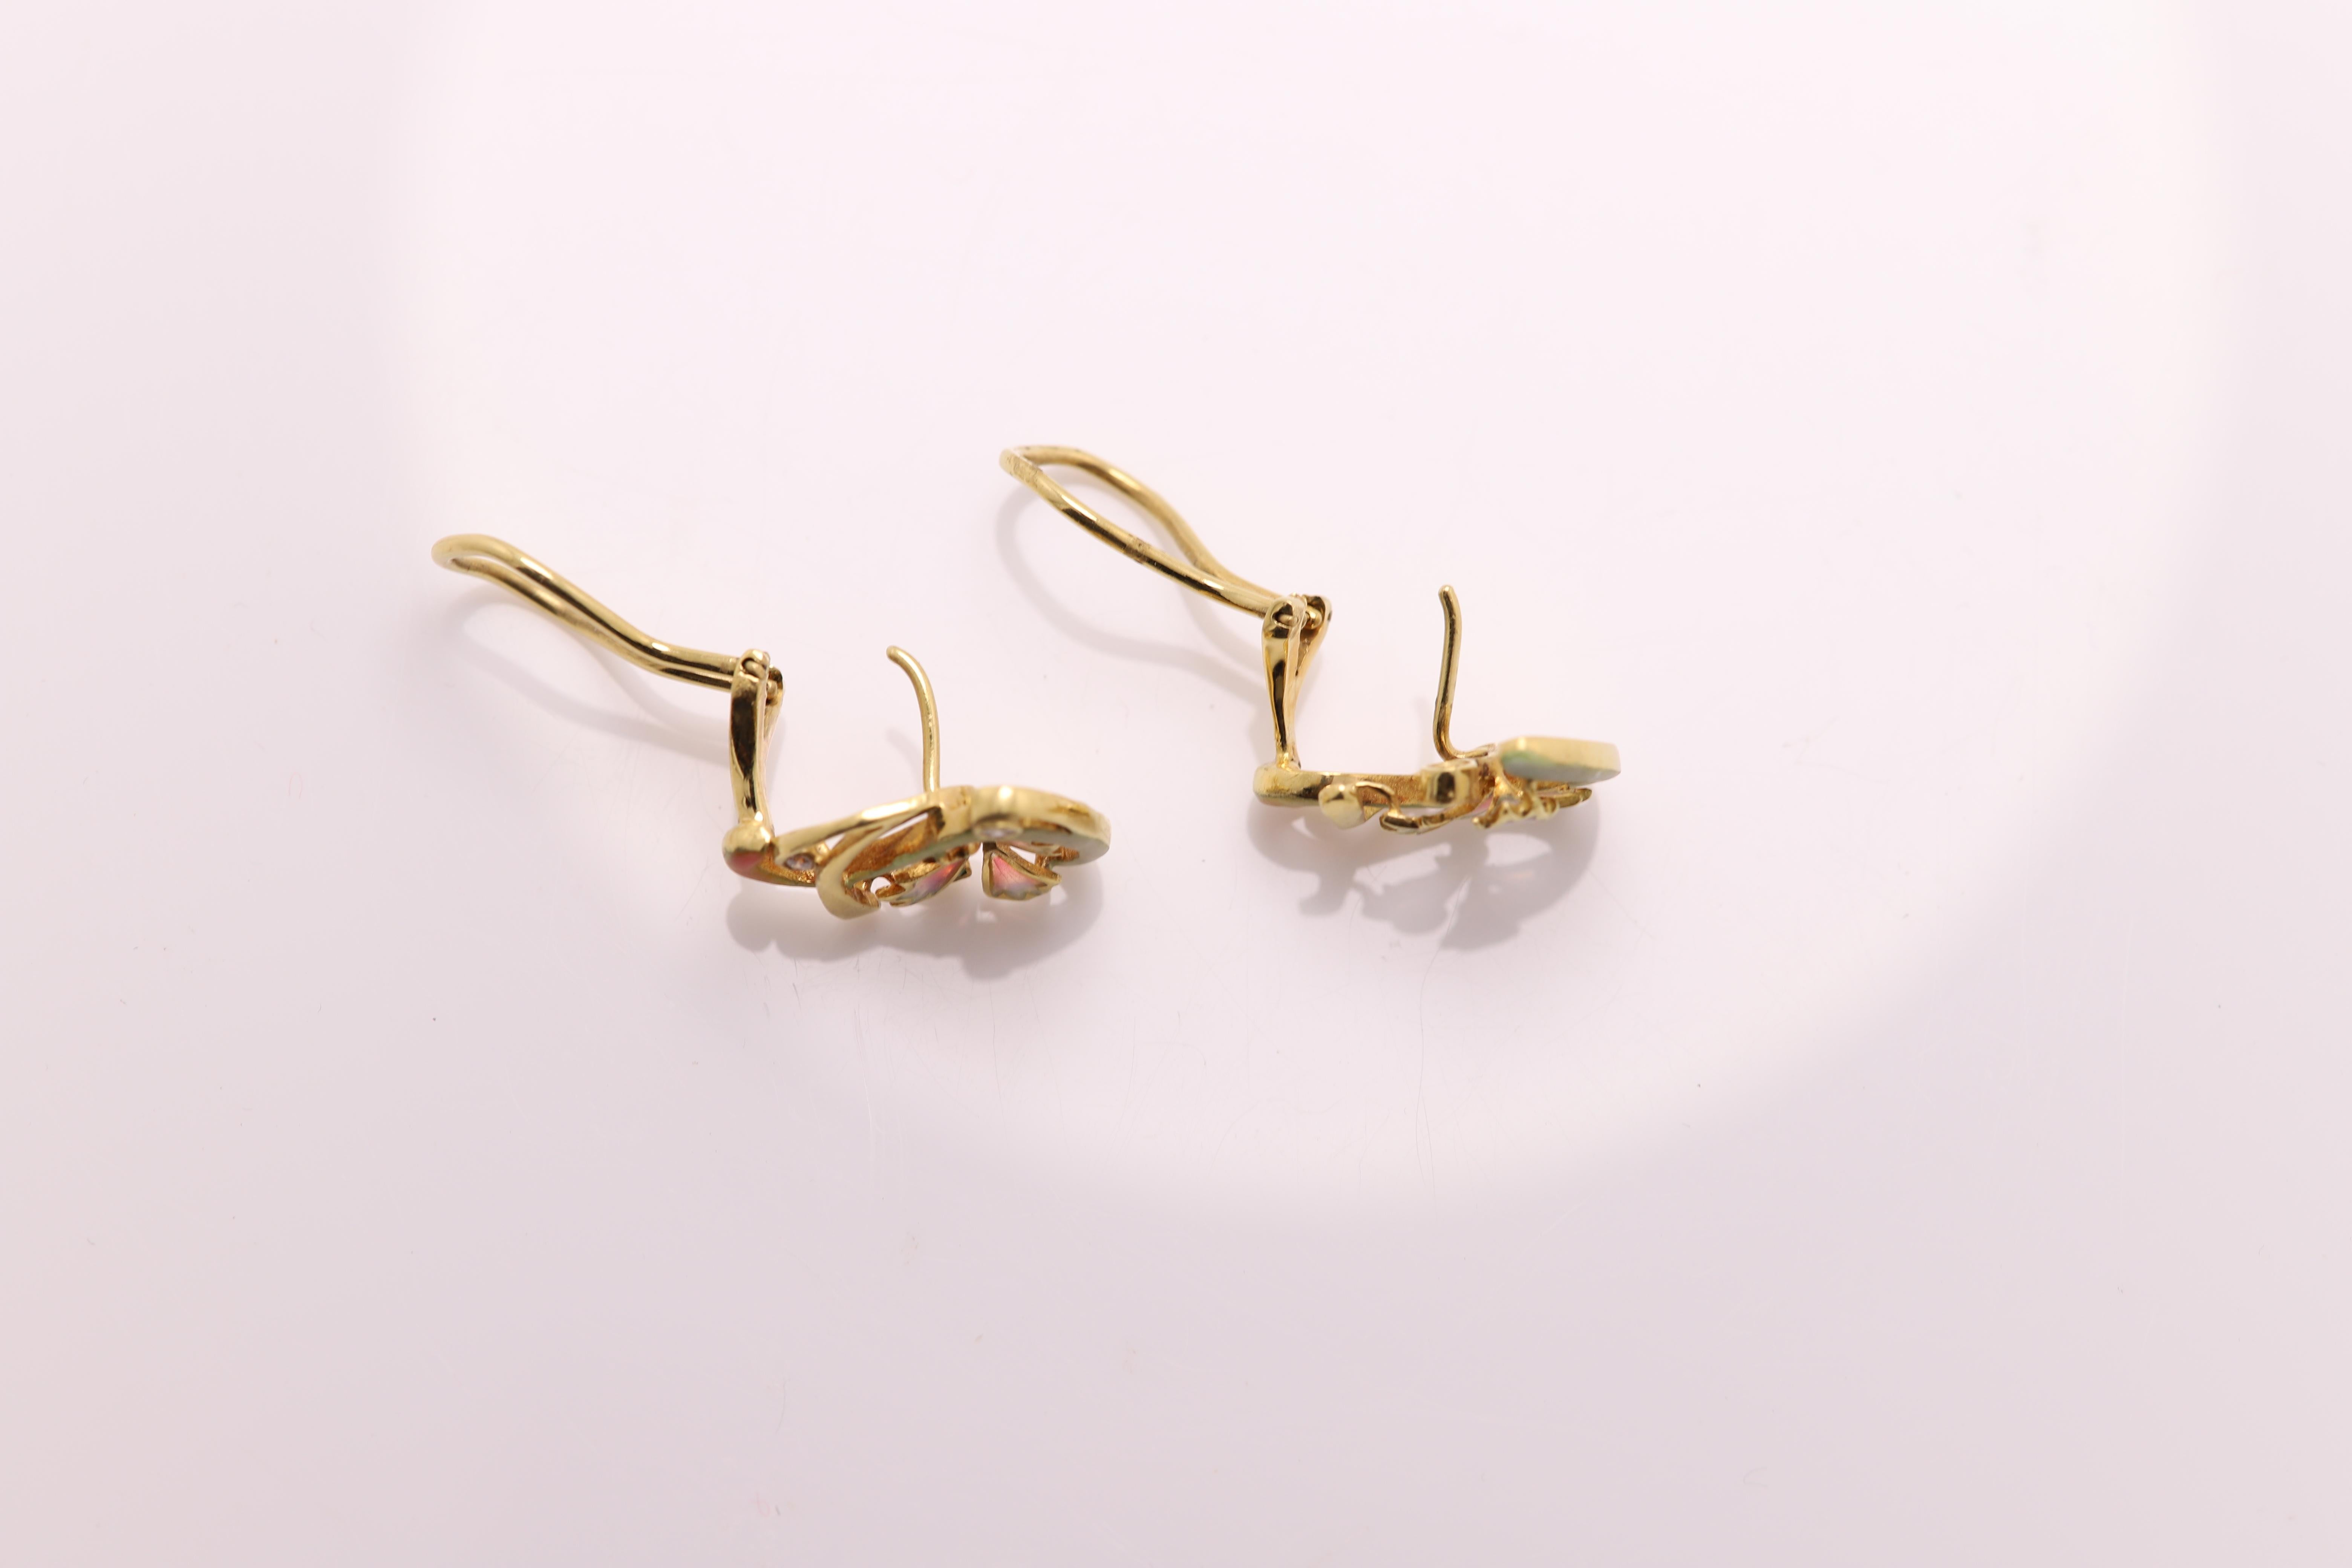 gold and enamel earrings